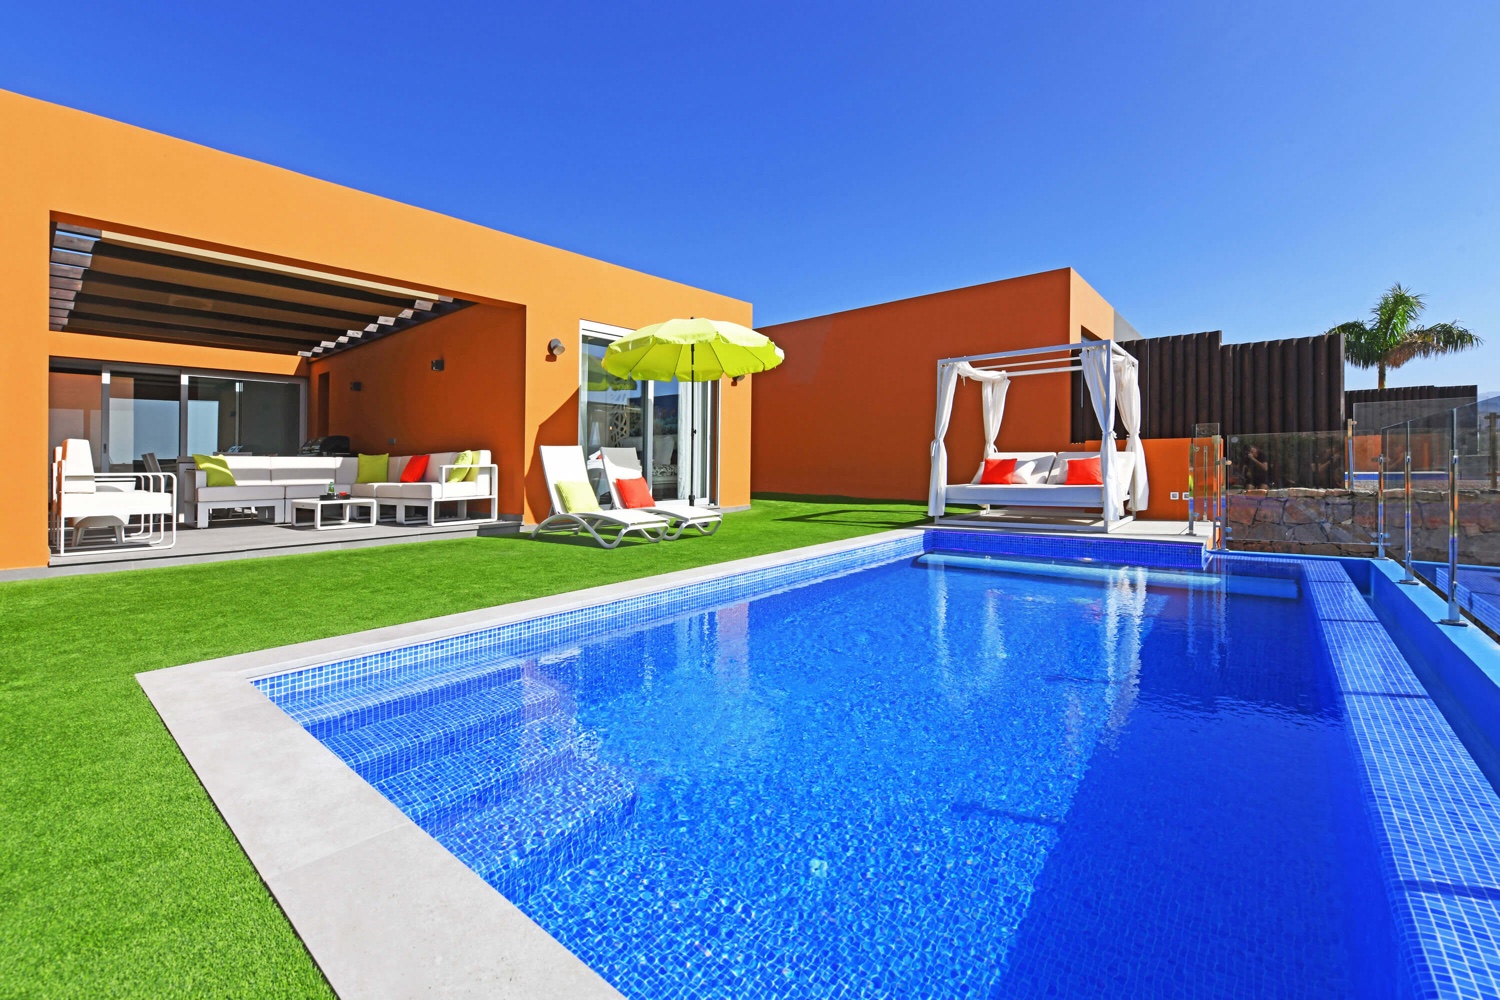 Modernes Luxusdomizil mit allem Komfort, geschmackvoller Einrichtung und einem gemütlichen Außenbereich mit sonniger Terrasse, privatem Pool und Meerblick sowie einer Terrasse mit Essbereich